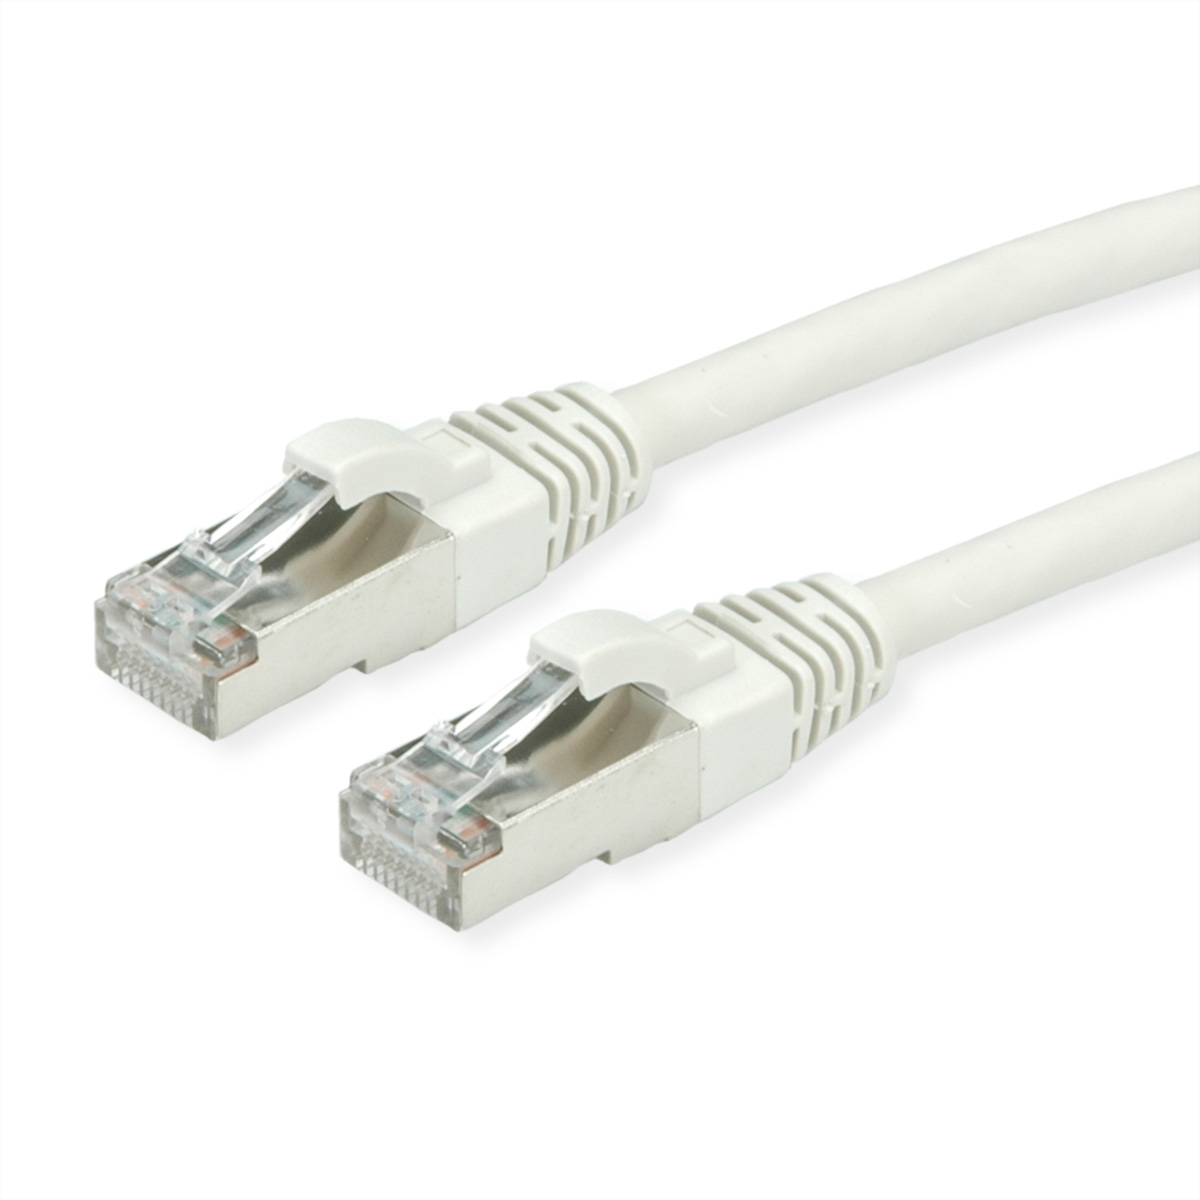 ROLINE S/FTP-Kabel Kat.7, LSOH, S/FTP 1 Patchkabel, m